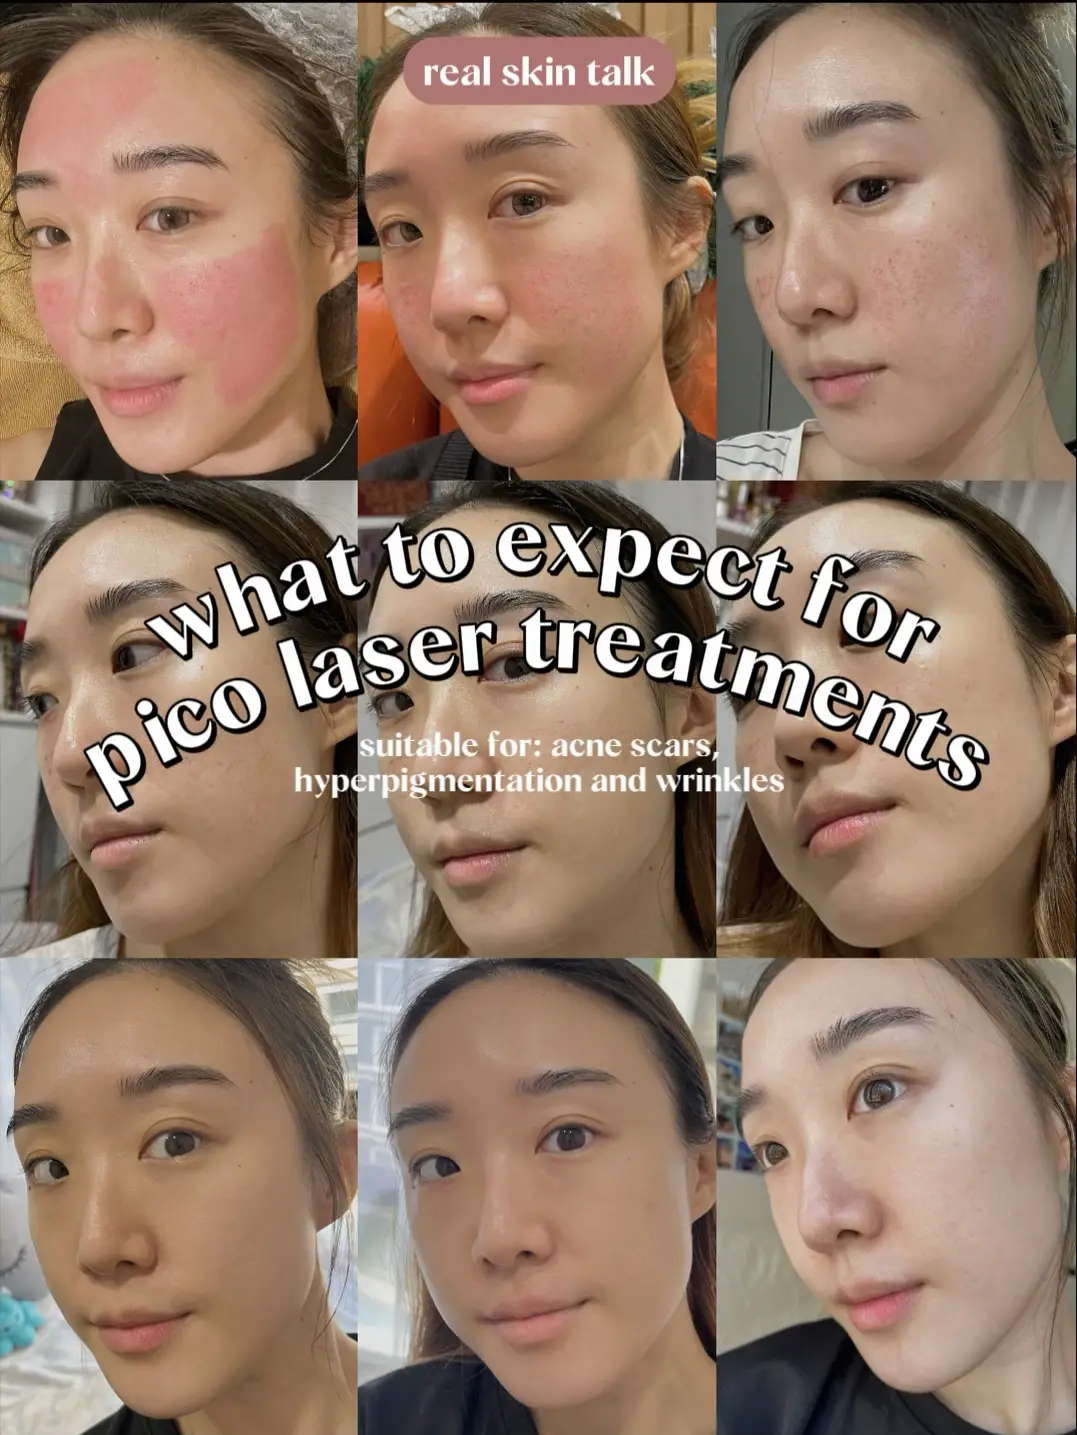 Pico Laser after 2 wks⚡️ Let’s talk skin treatments's images